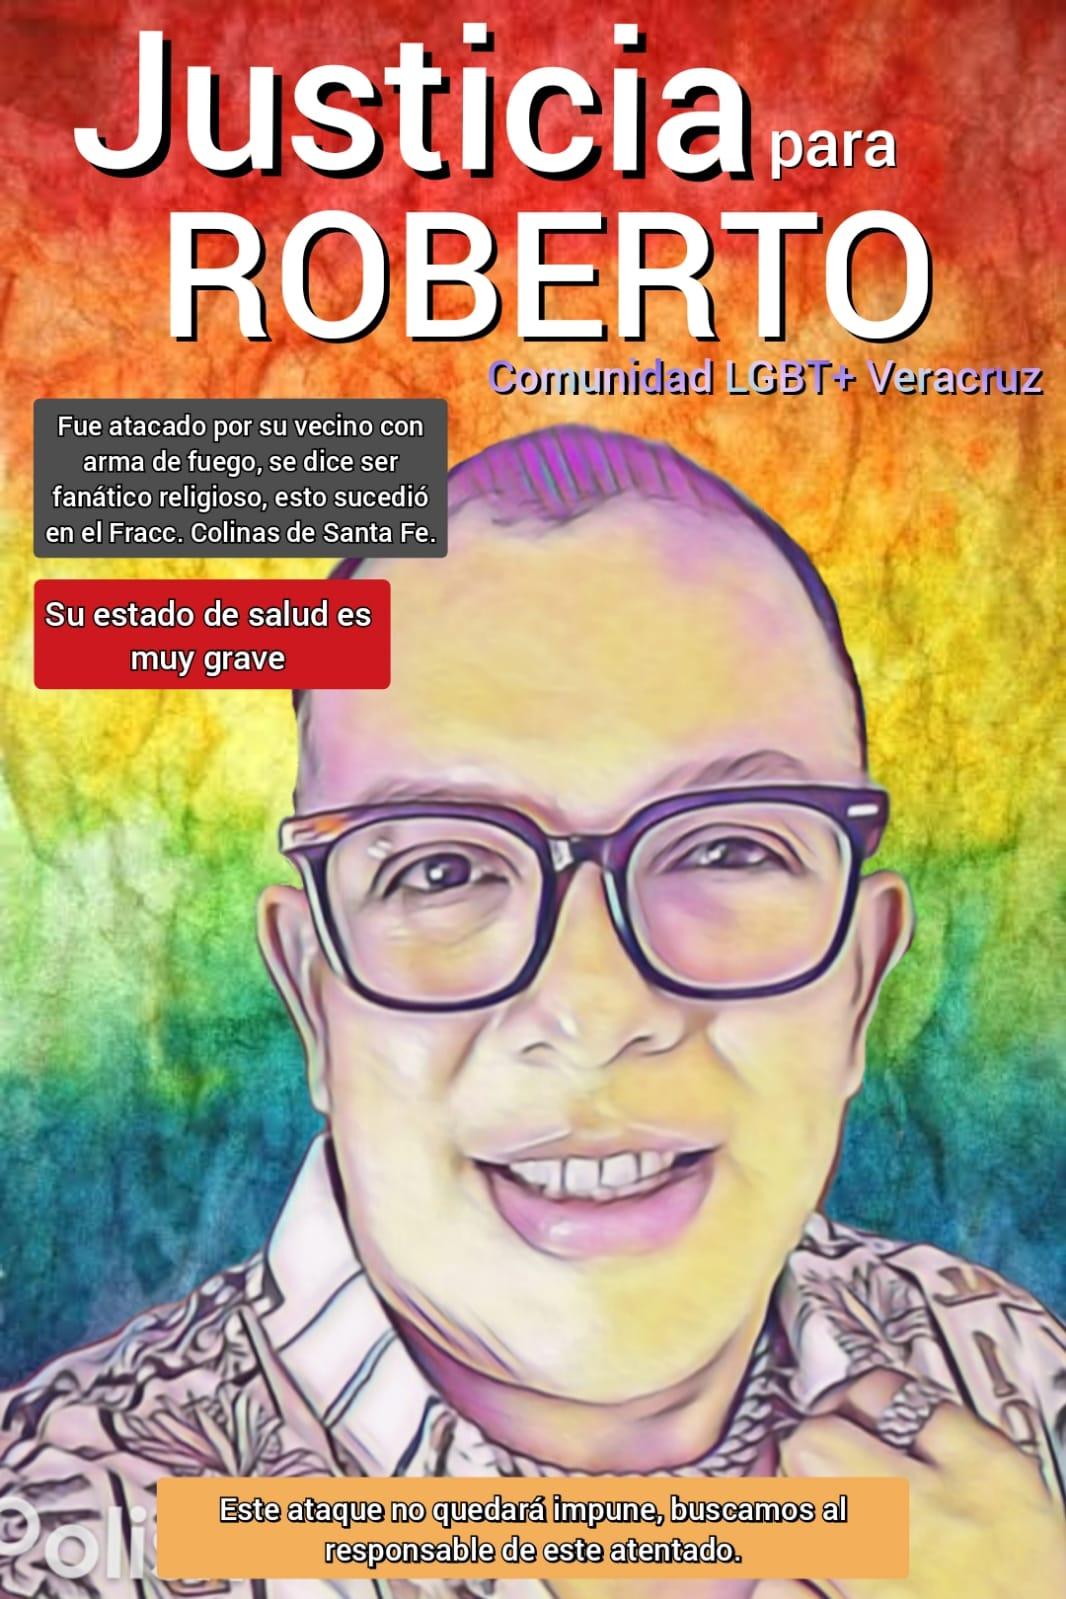 Roberto, de la comunidad LGBT+, fue baleado en Veracruz por su vecino